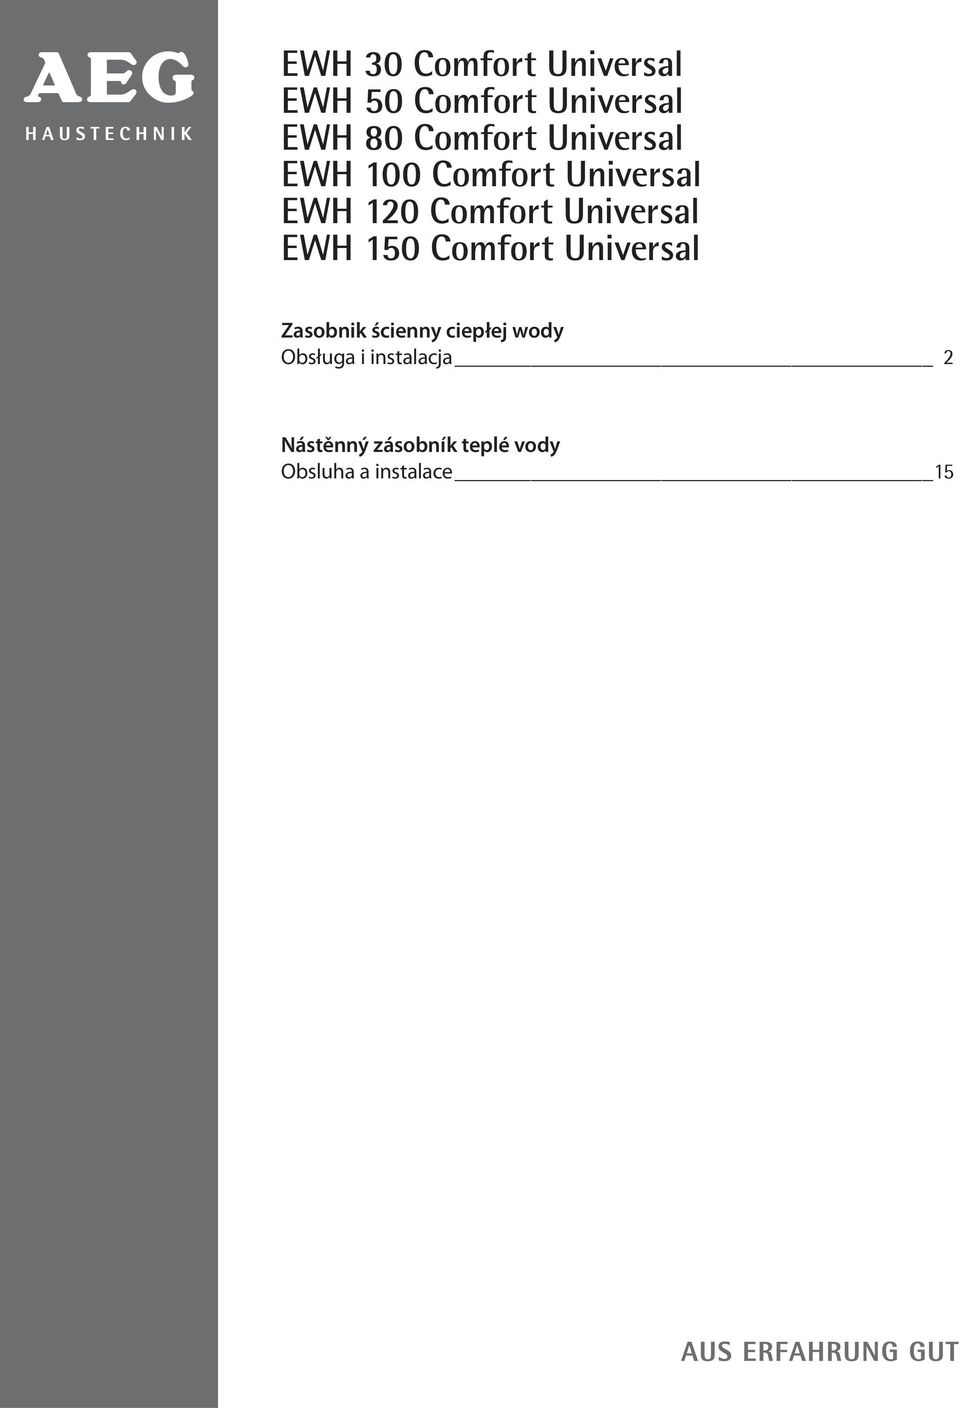 EWH 150 Comfort Universal Zasobnik ścienny ciepłej wody Obsługa